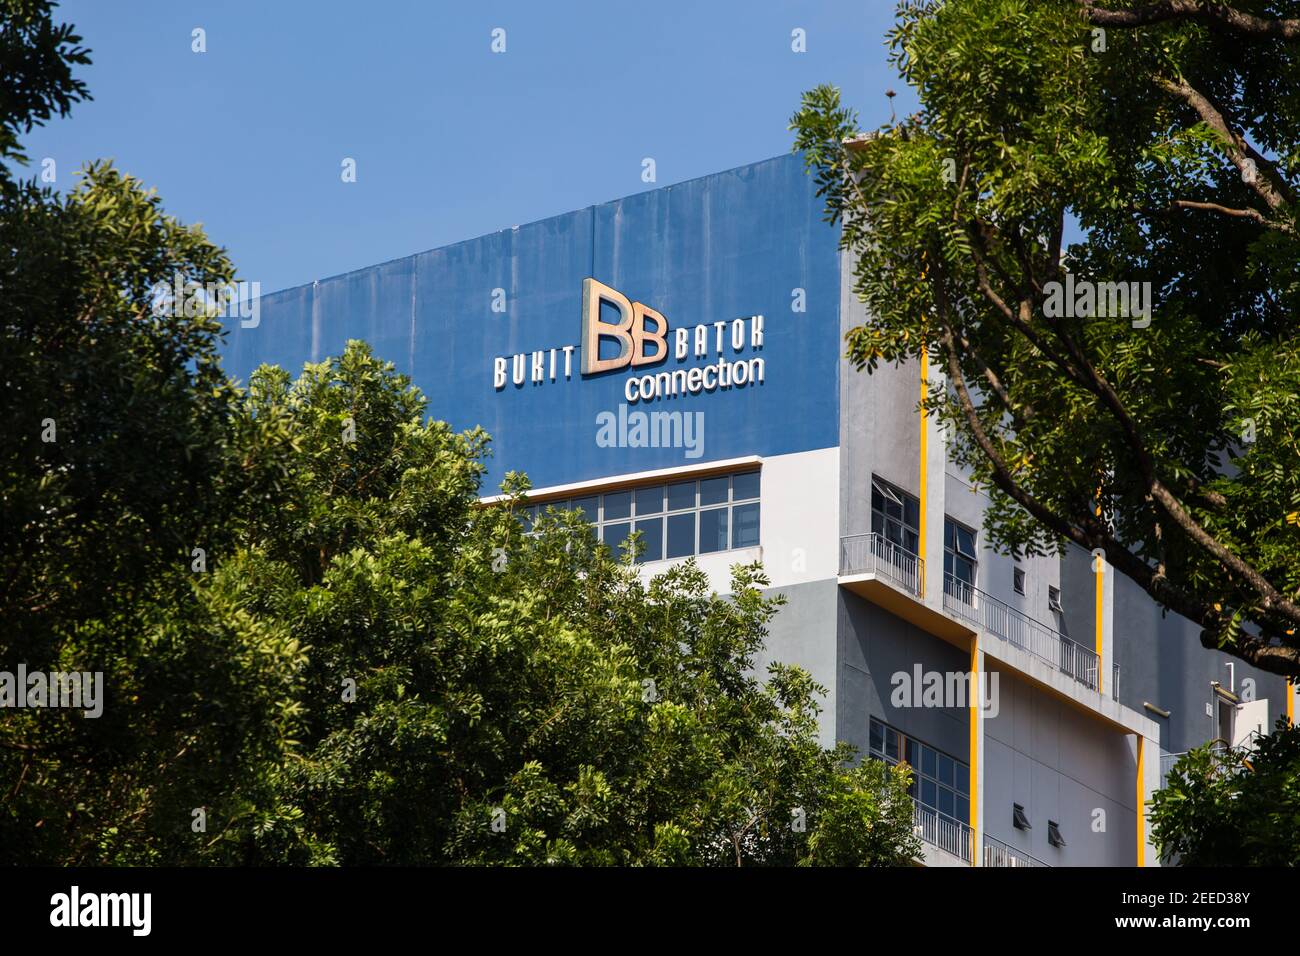 Gros plan sur le logo Bukit Batok Connection d'une usine industrielle légère, Singapour Banque D'Images